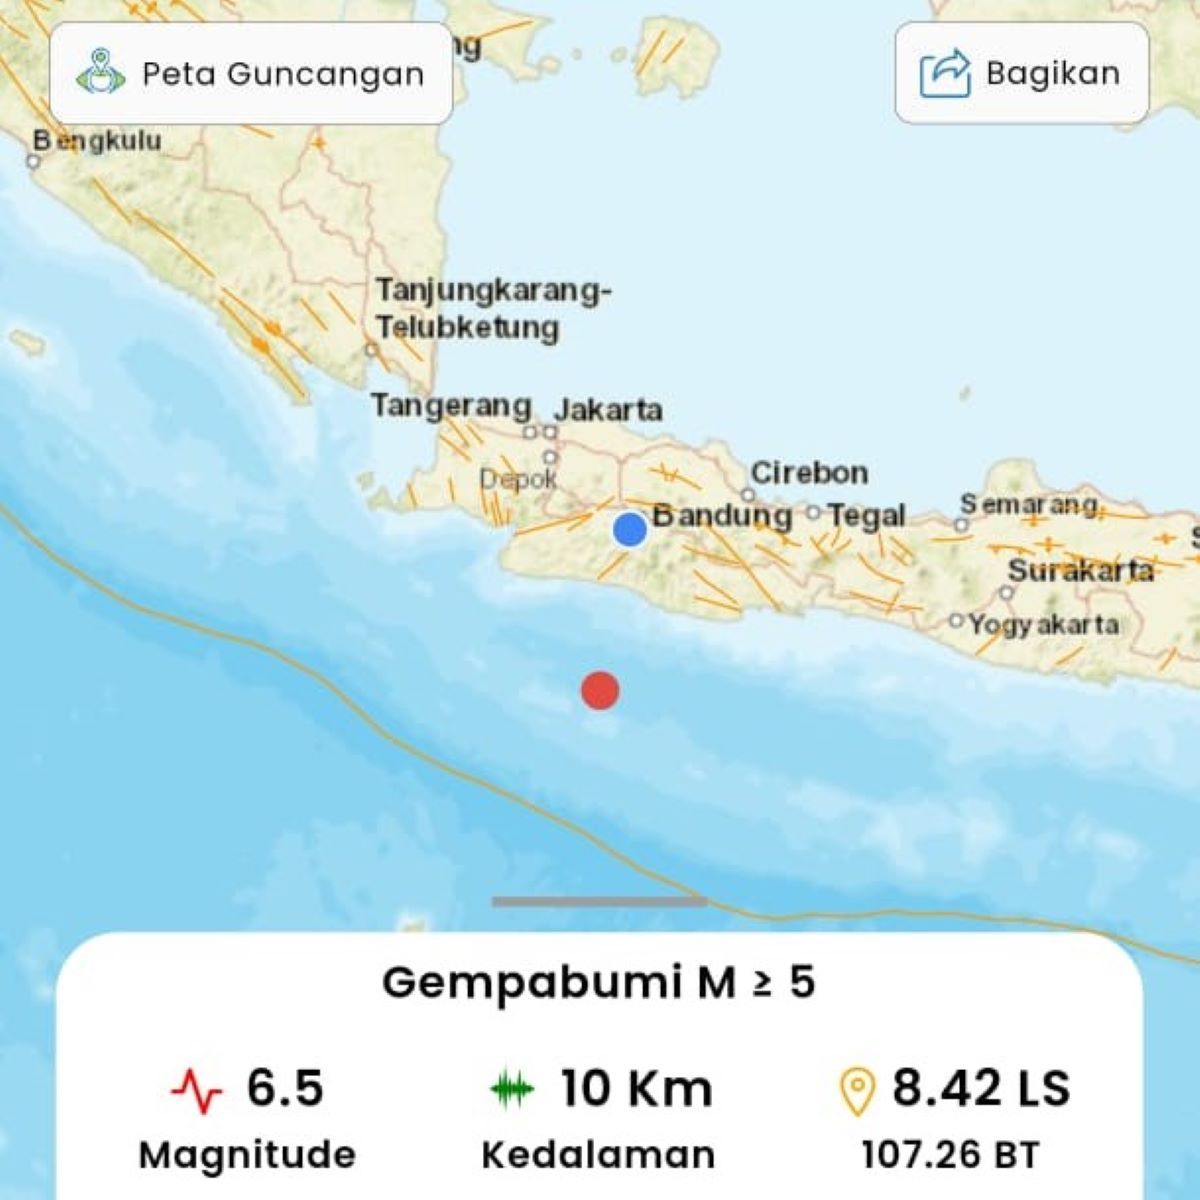 Bandung Gempa Pusat Gempa di Garut Jawa Barat, BMKG sebut kekuatan gempa 6.5 magnitudo